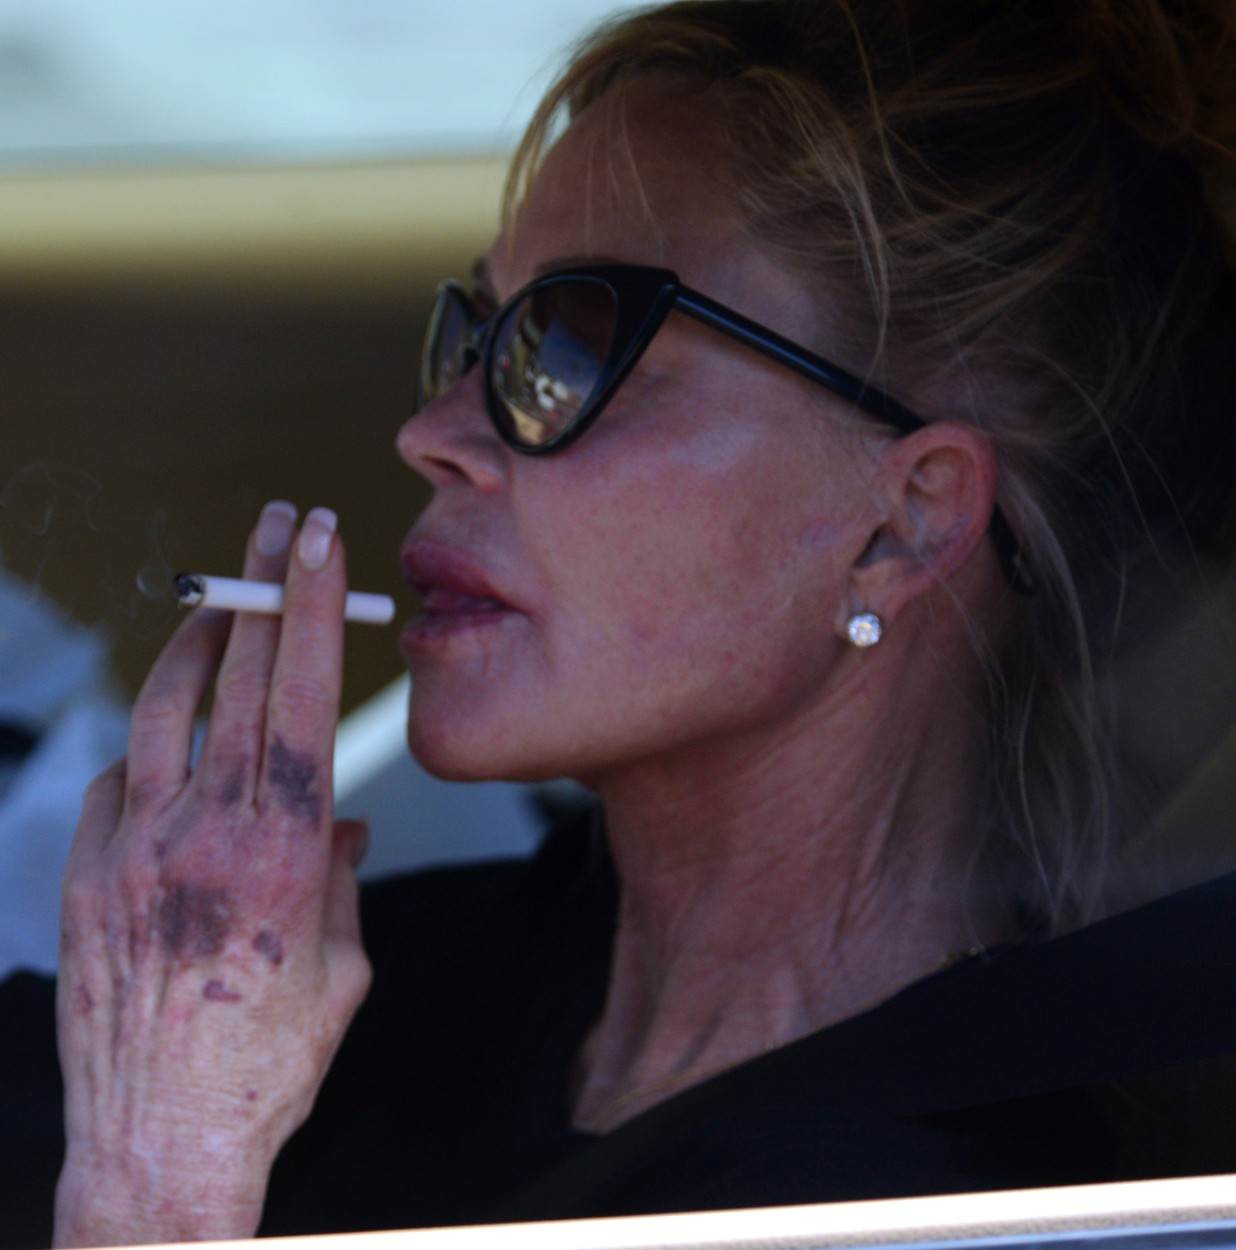  Melani Grifit ne prestaje da puši iako joj je to strogo zabranjeno. 